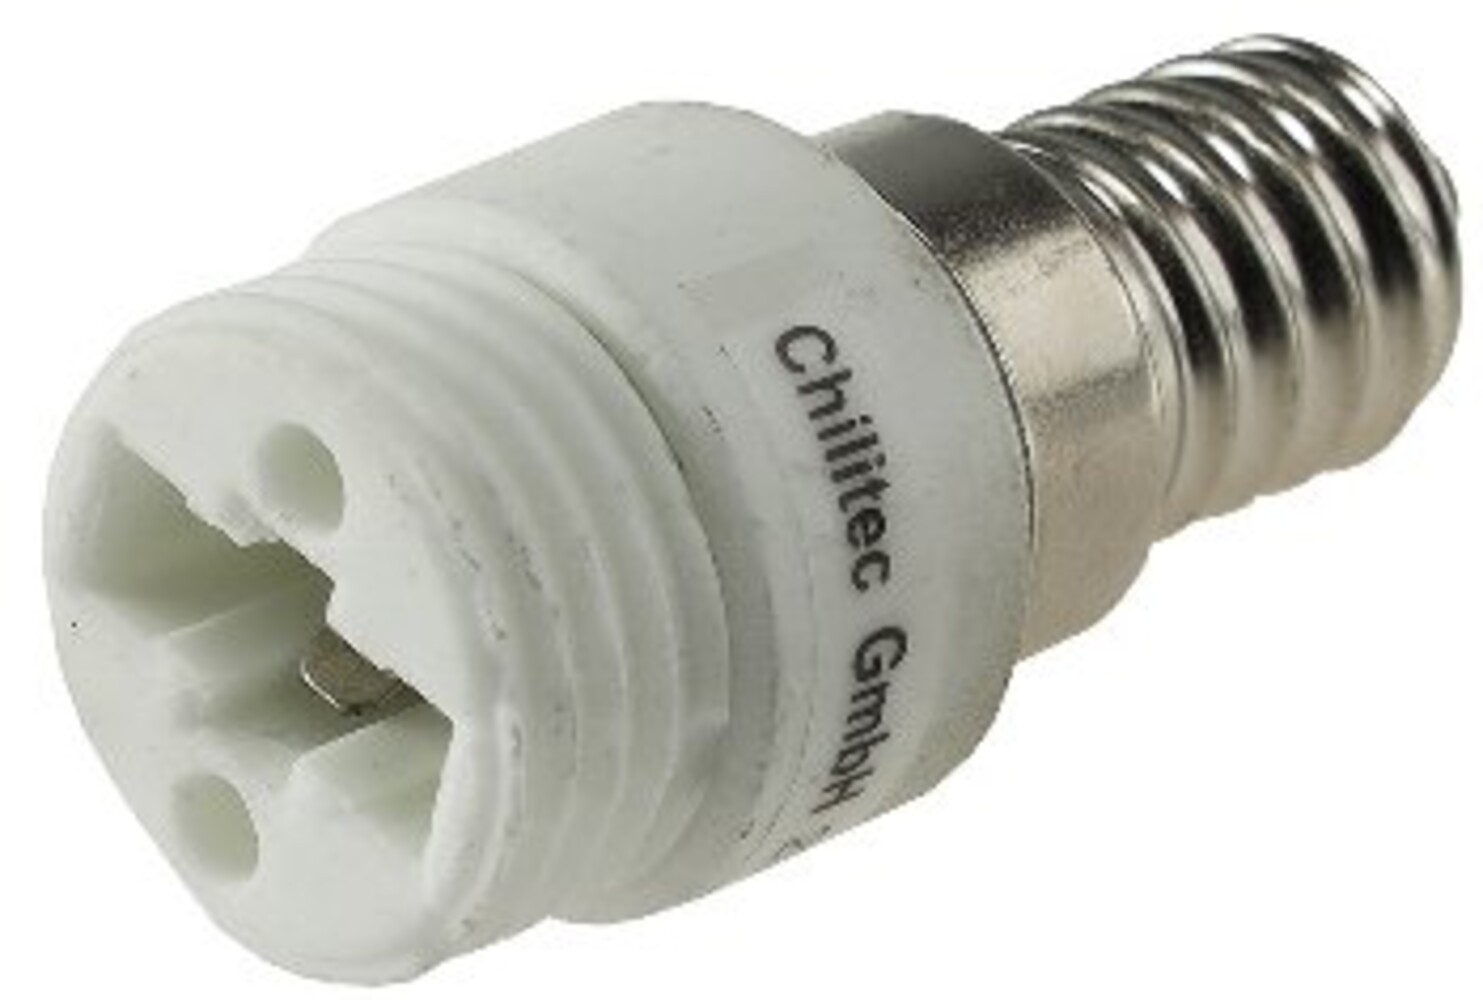 Hochwertiger ChiliTec Keramik Lampensockel Adapter von E14 zu G9